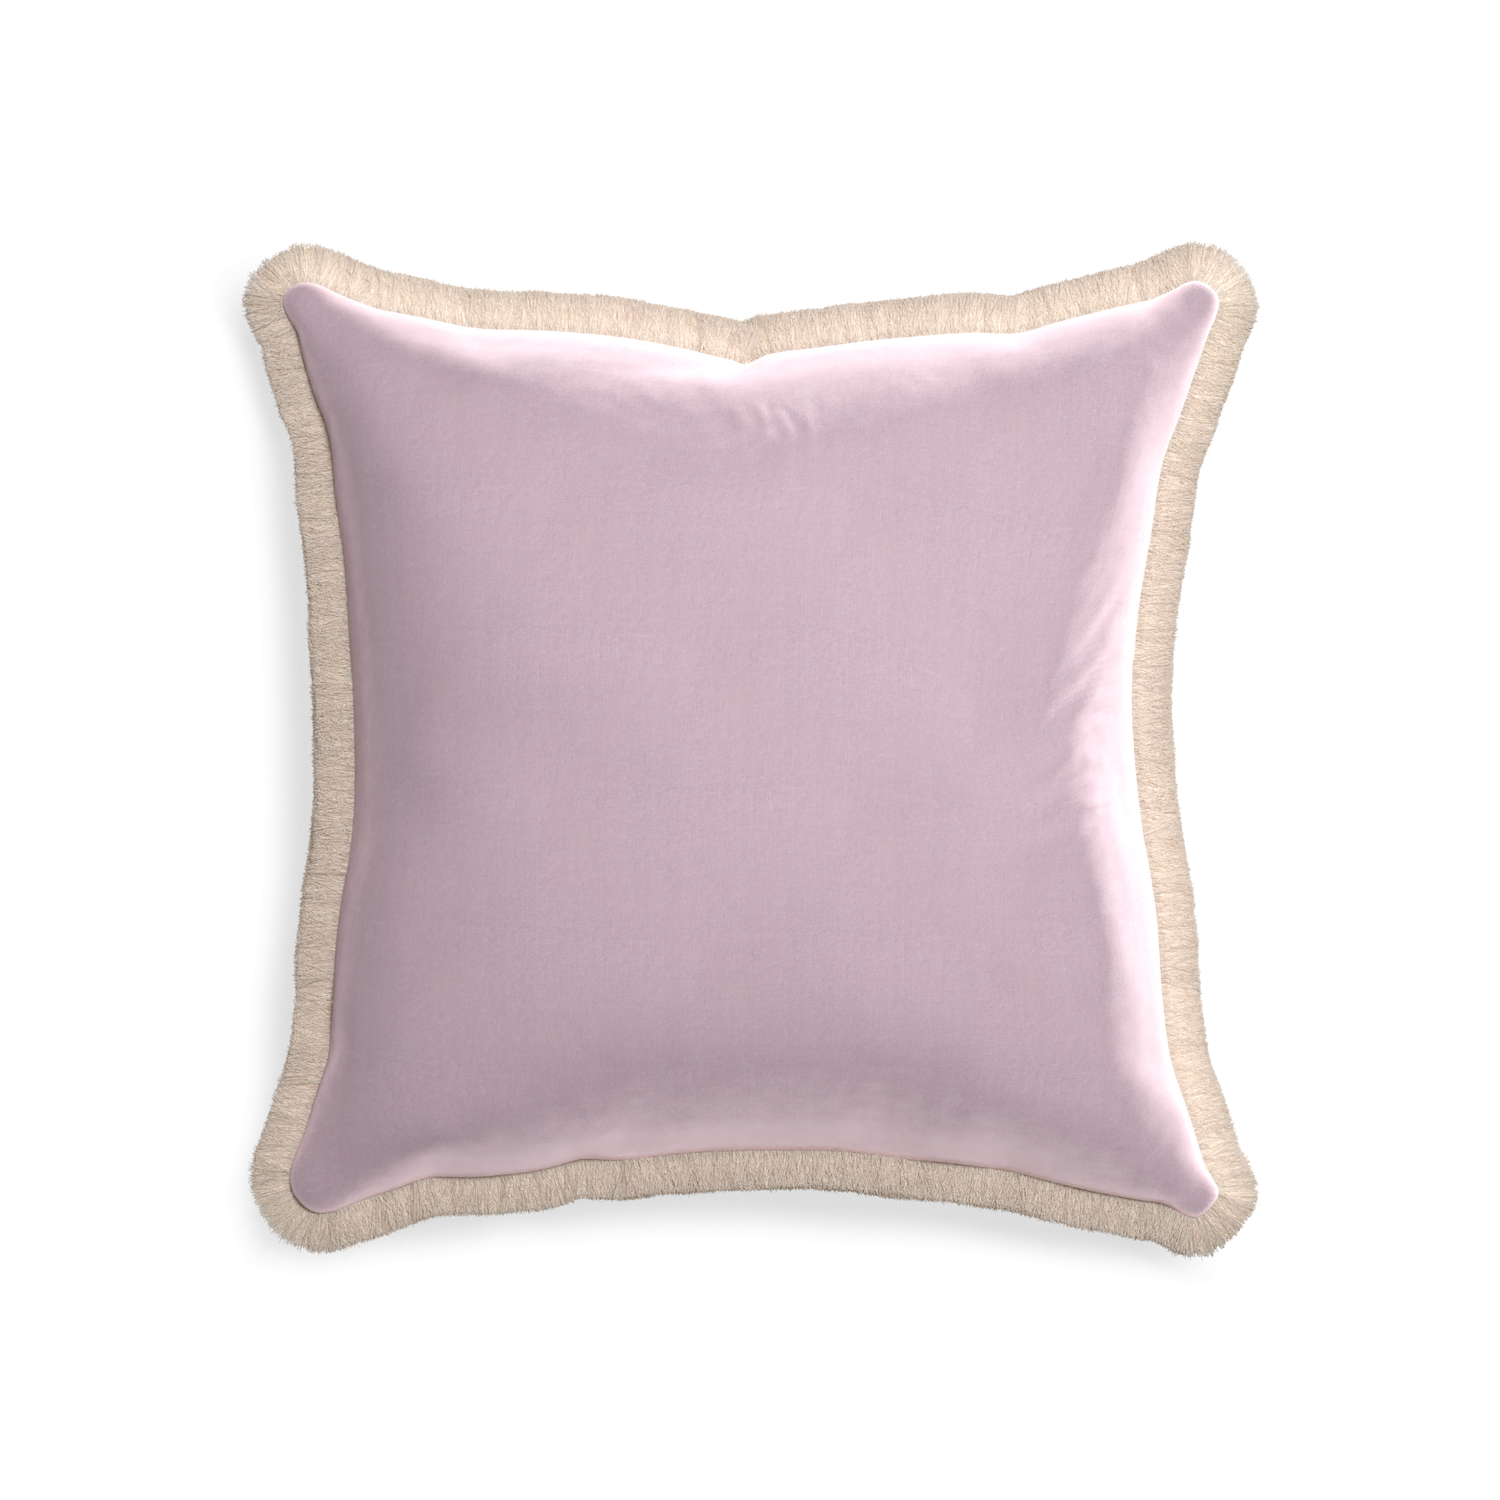 20-square lilac velvet custom pillow with cream fringe on white background